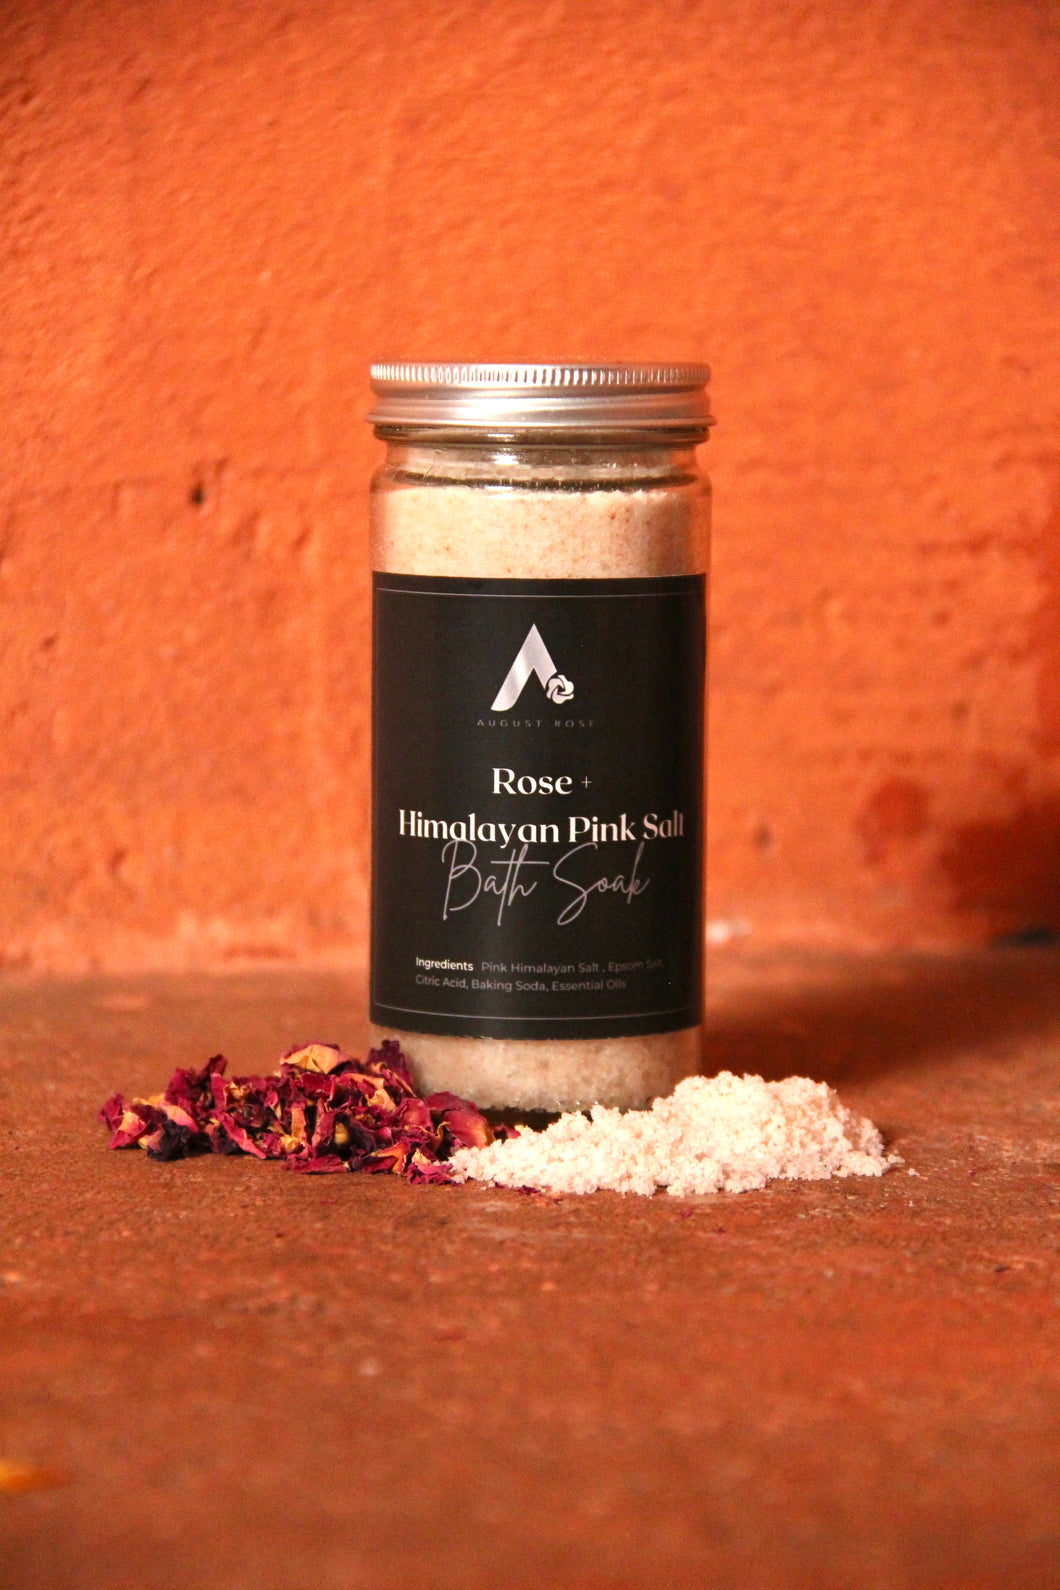 Rose + Himalayan Pink Salt Bath Soak